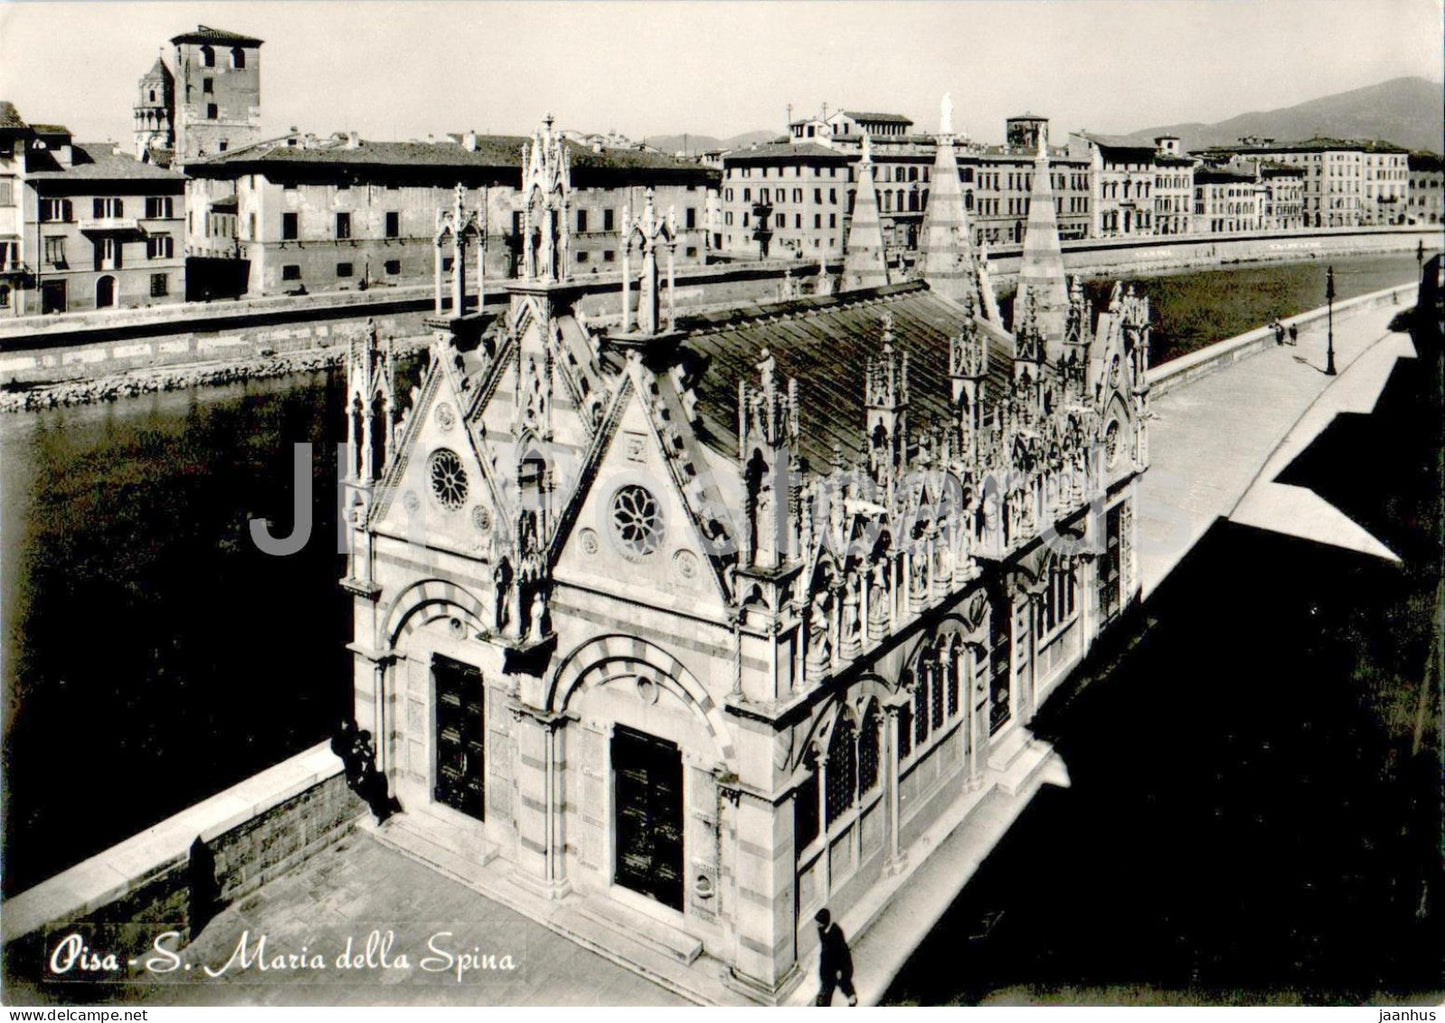 Pisa - S Maria della Spina - Santa Maria della Spina church - Italy - unused - JH Postcards